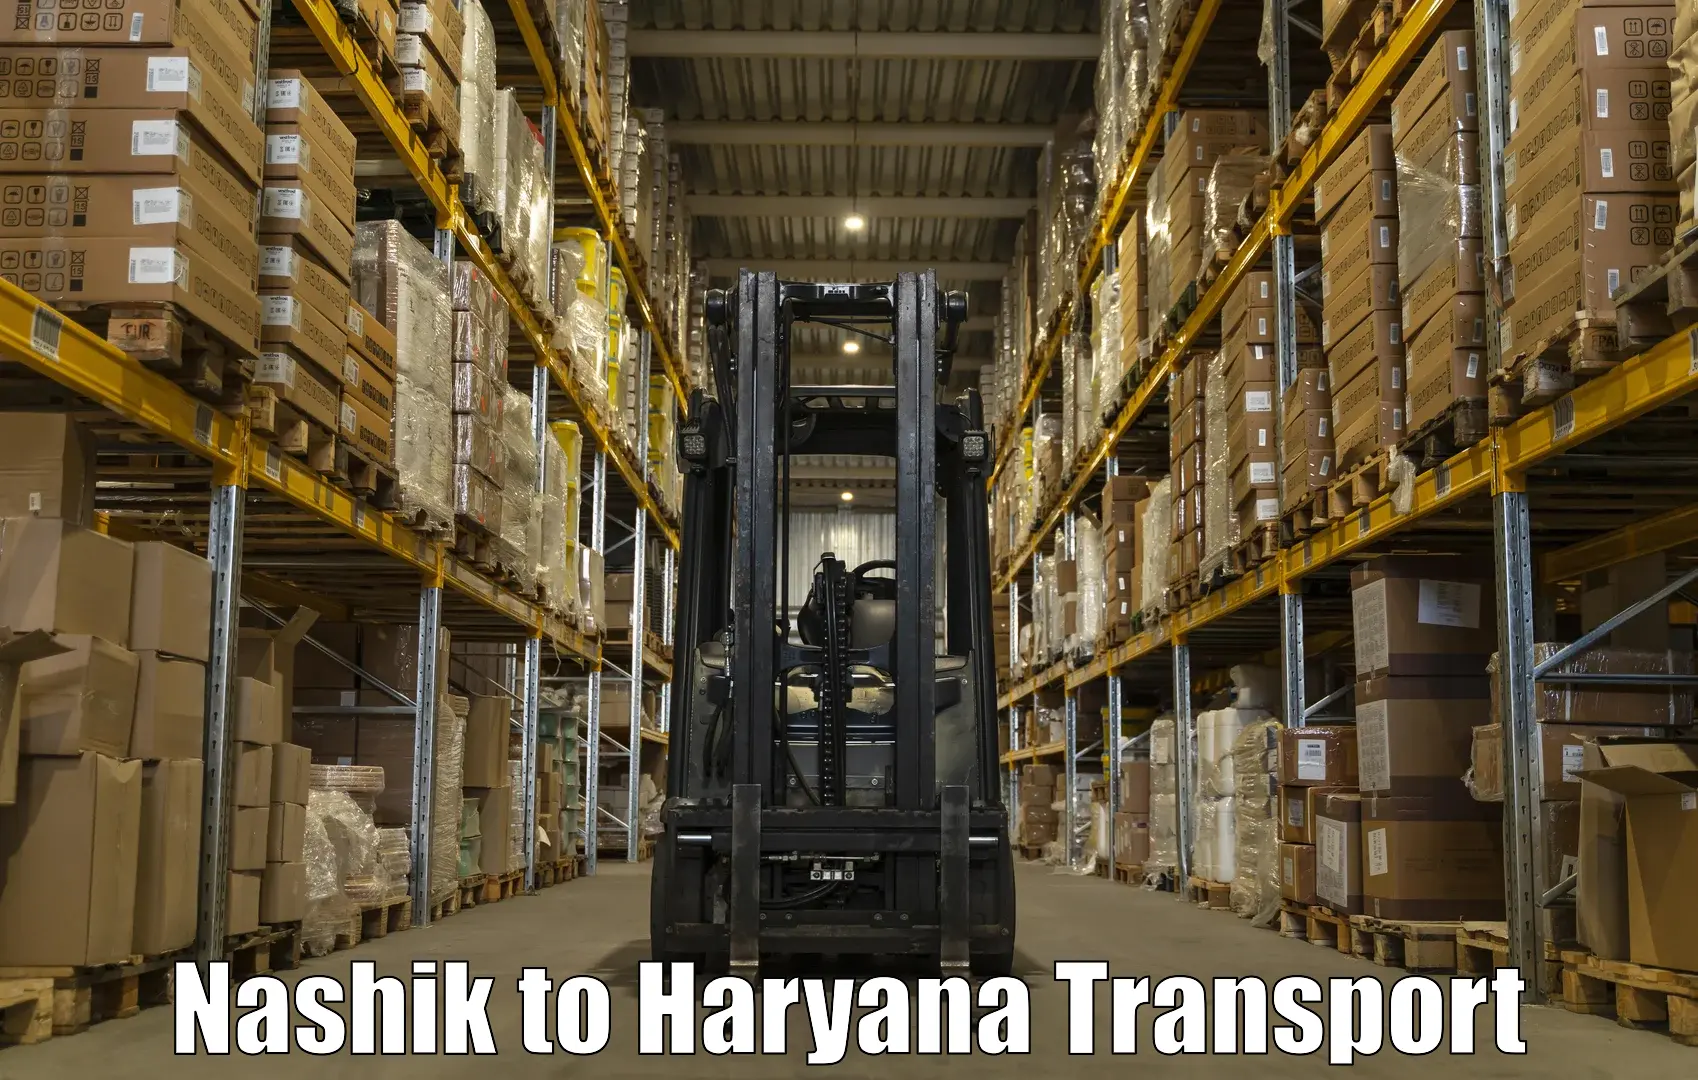 Land transport services in Nashik to Bilaspur Haryana